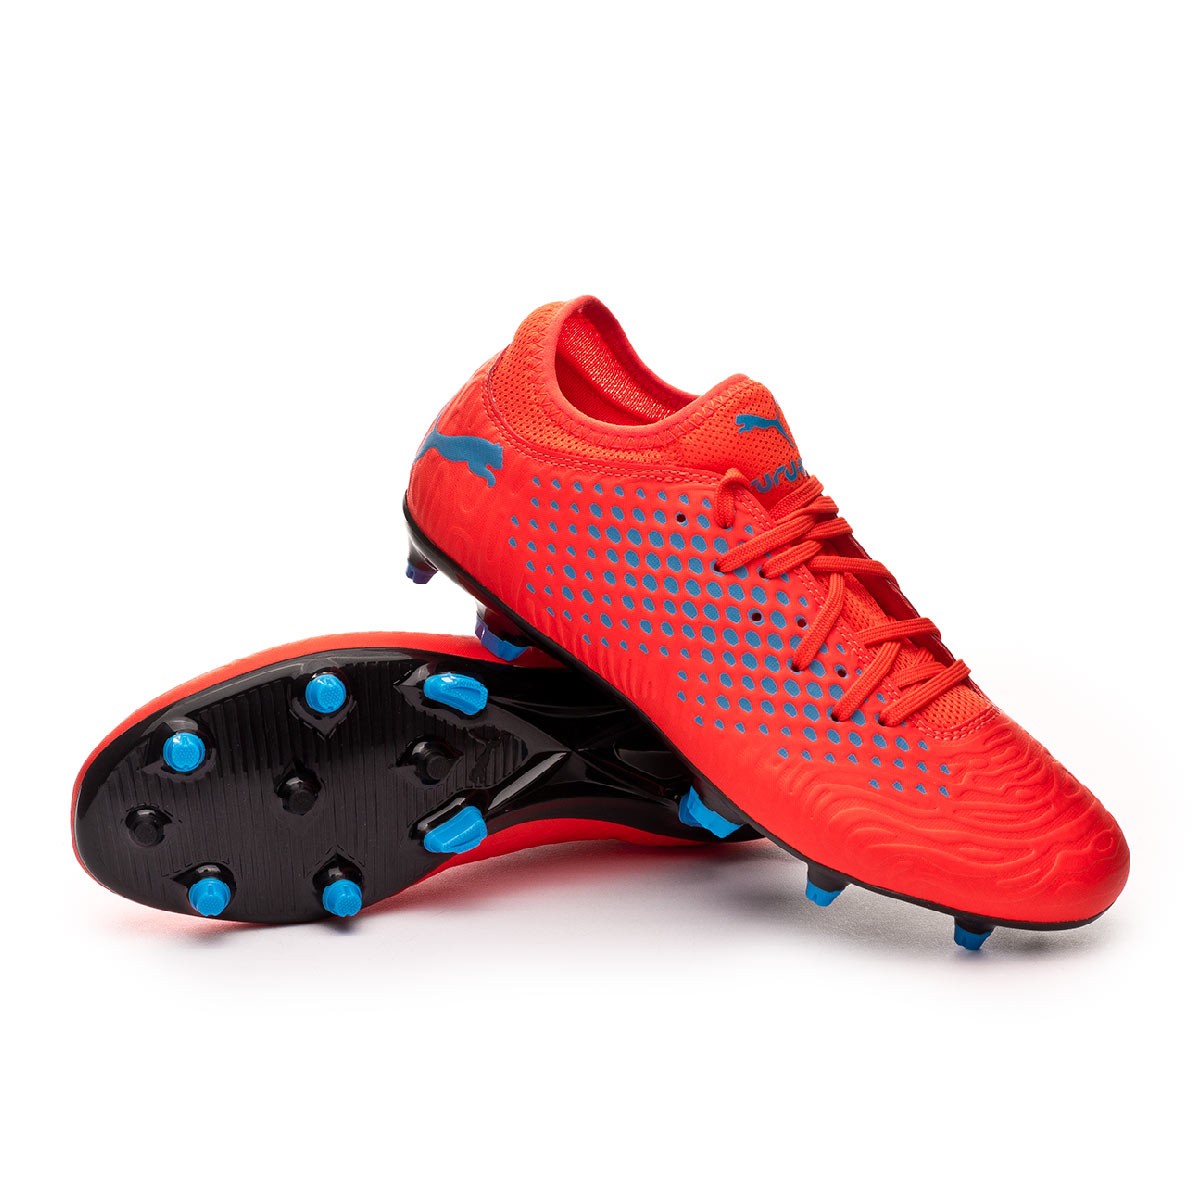 Football Boots Puma Future 19.4 FG/AG 